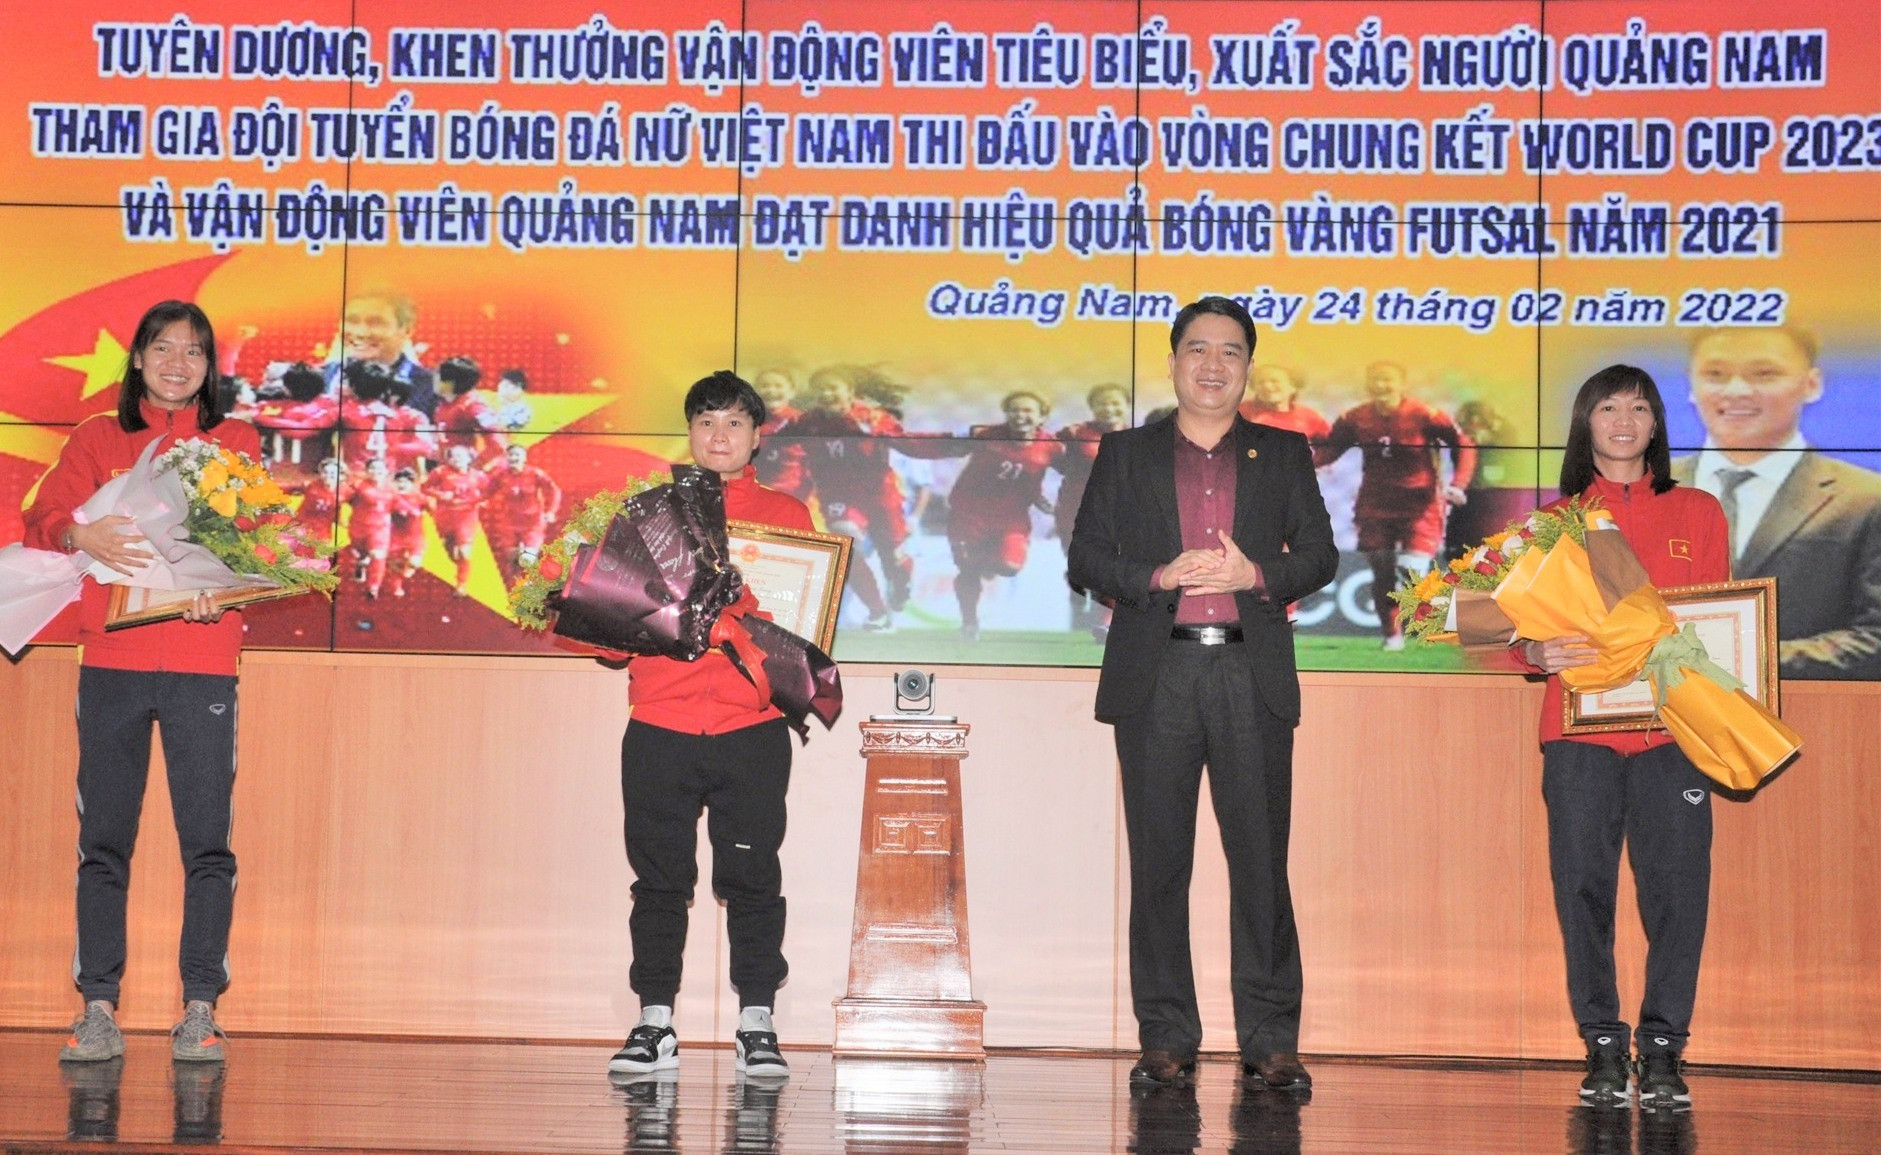 Cả 3 cầu thủ nữ Quảng Nam được UBND tỉnh biểu dương, khen thưởng sau khi cùng đội tuyển bóng đá nữ Việt Nam lọt vào vòng chung kết World Cup. Ảnh: T.V